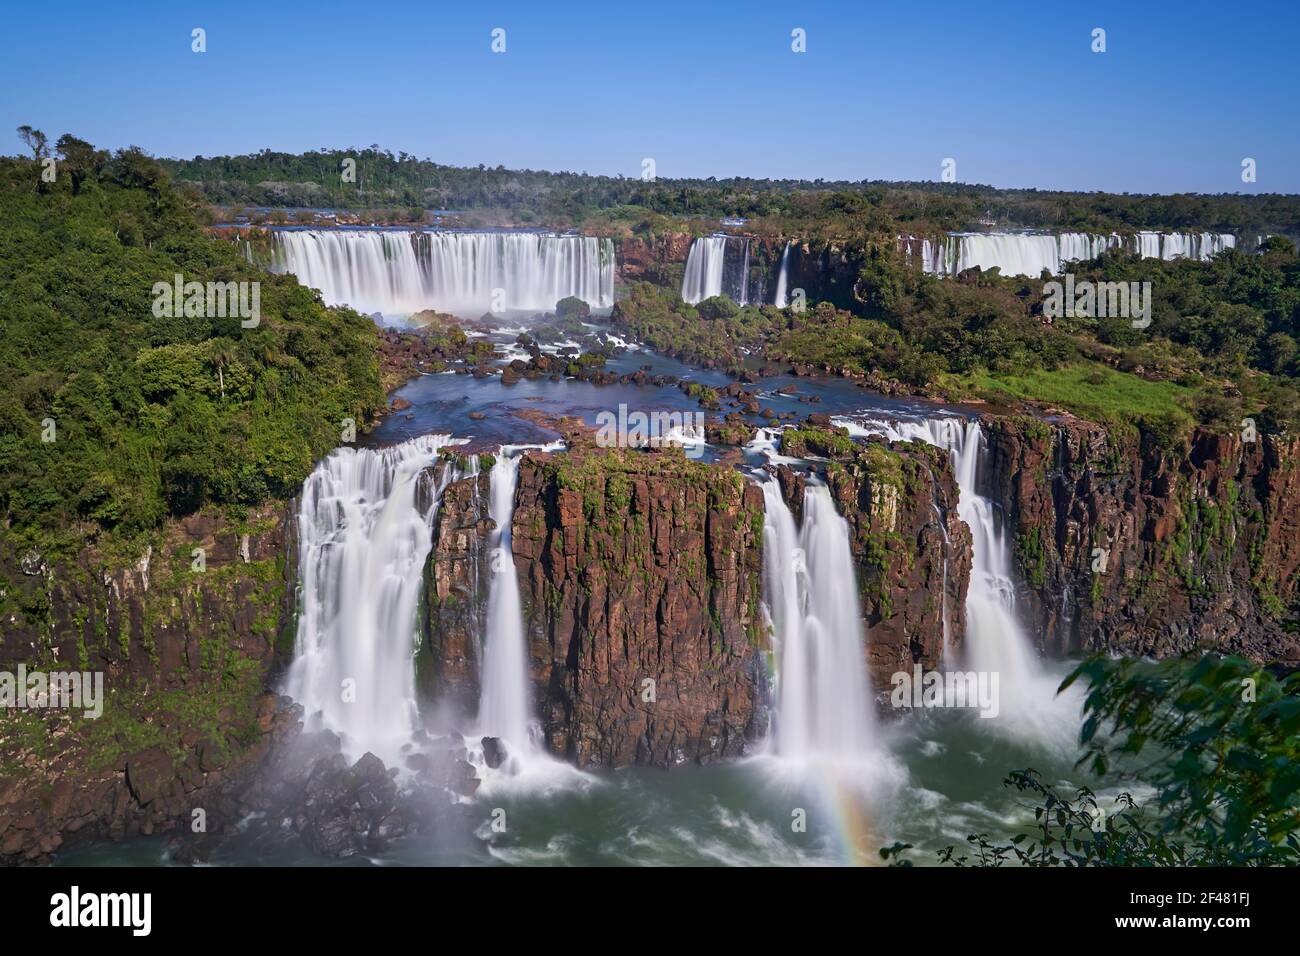 Iguazu Falls oder Iguacu Falls, an der Grenze zwischen Argentinien und Brasilien, sind der größte Wasserfall der Welt. Sehr hoher Wasserfall mit weißem Wasser in b Stockfoto